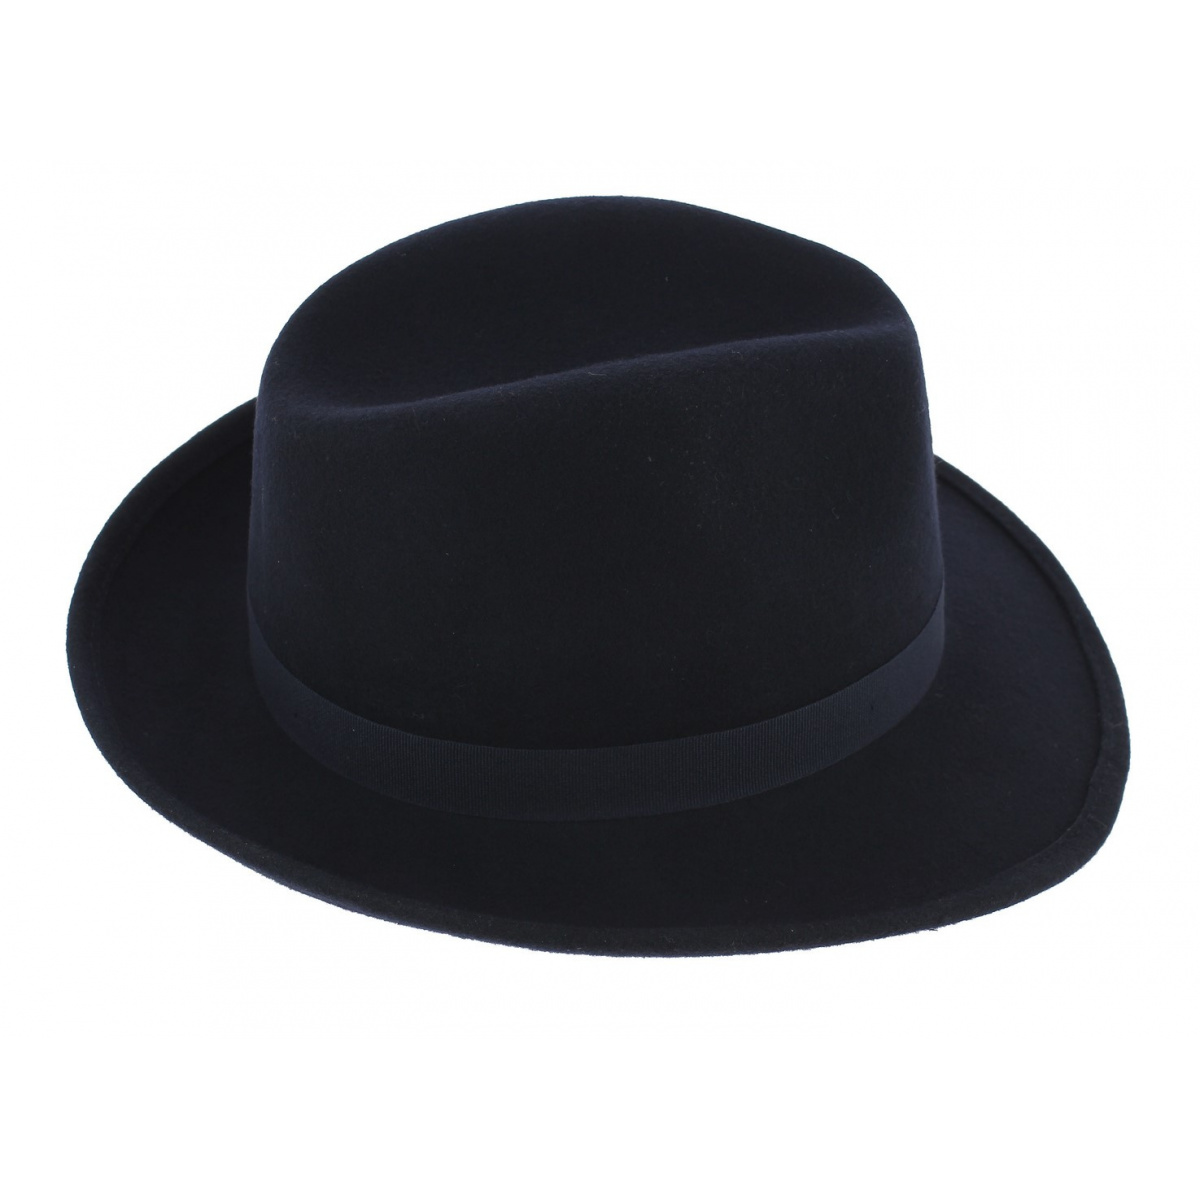 Votre Chapeau Homme Style Canotier : 100% Élégance et Qualité en